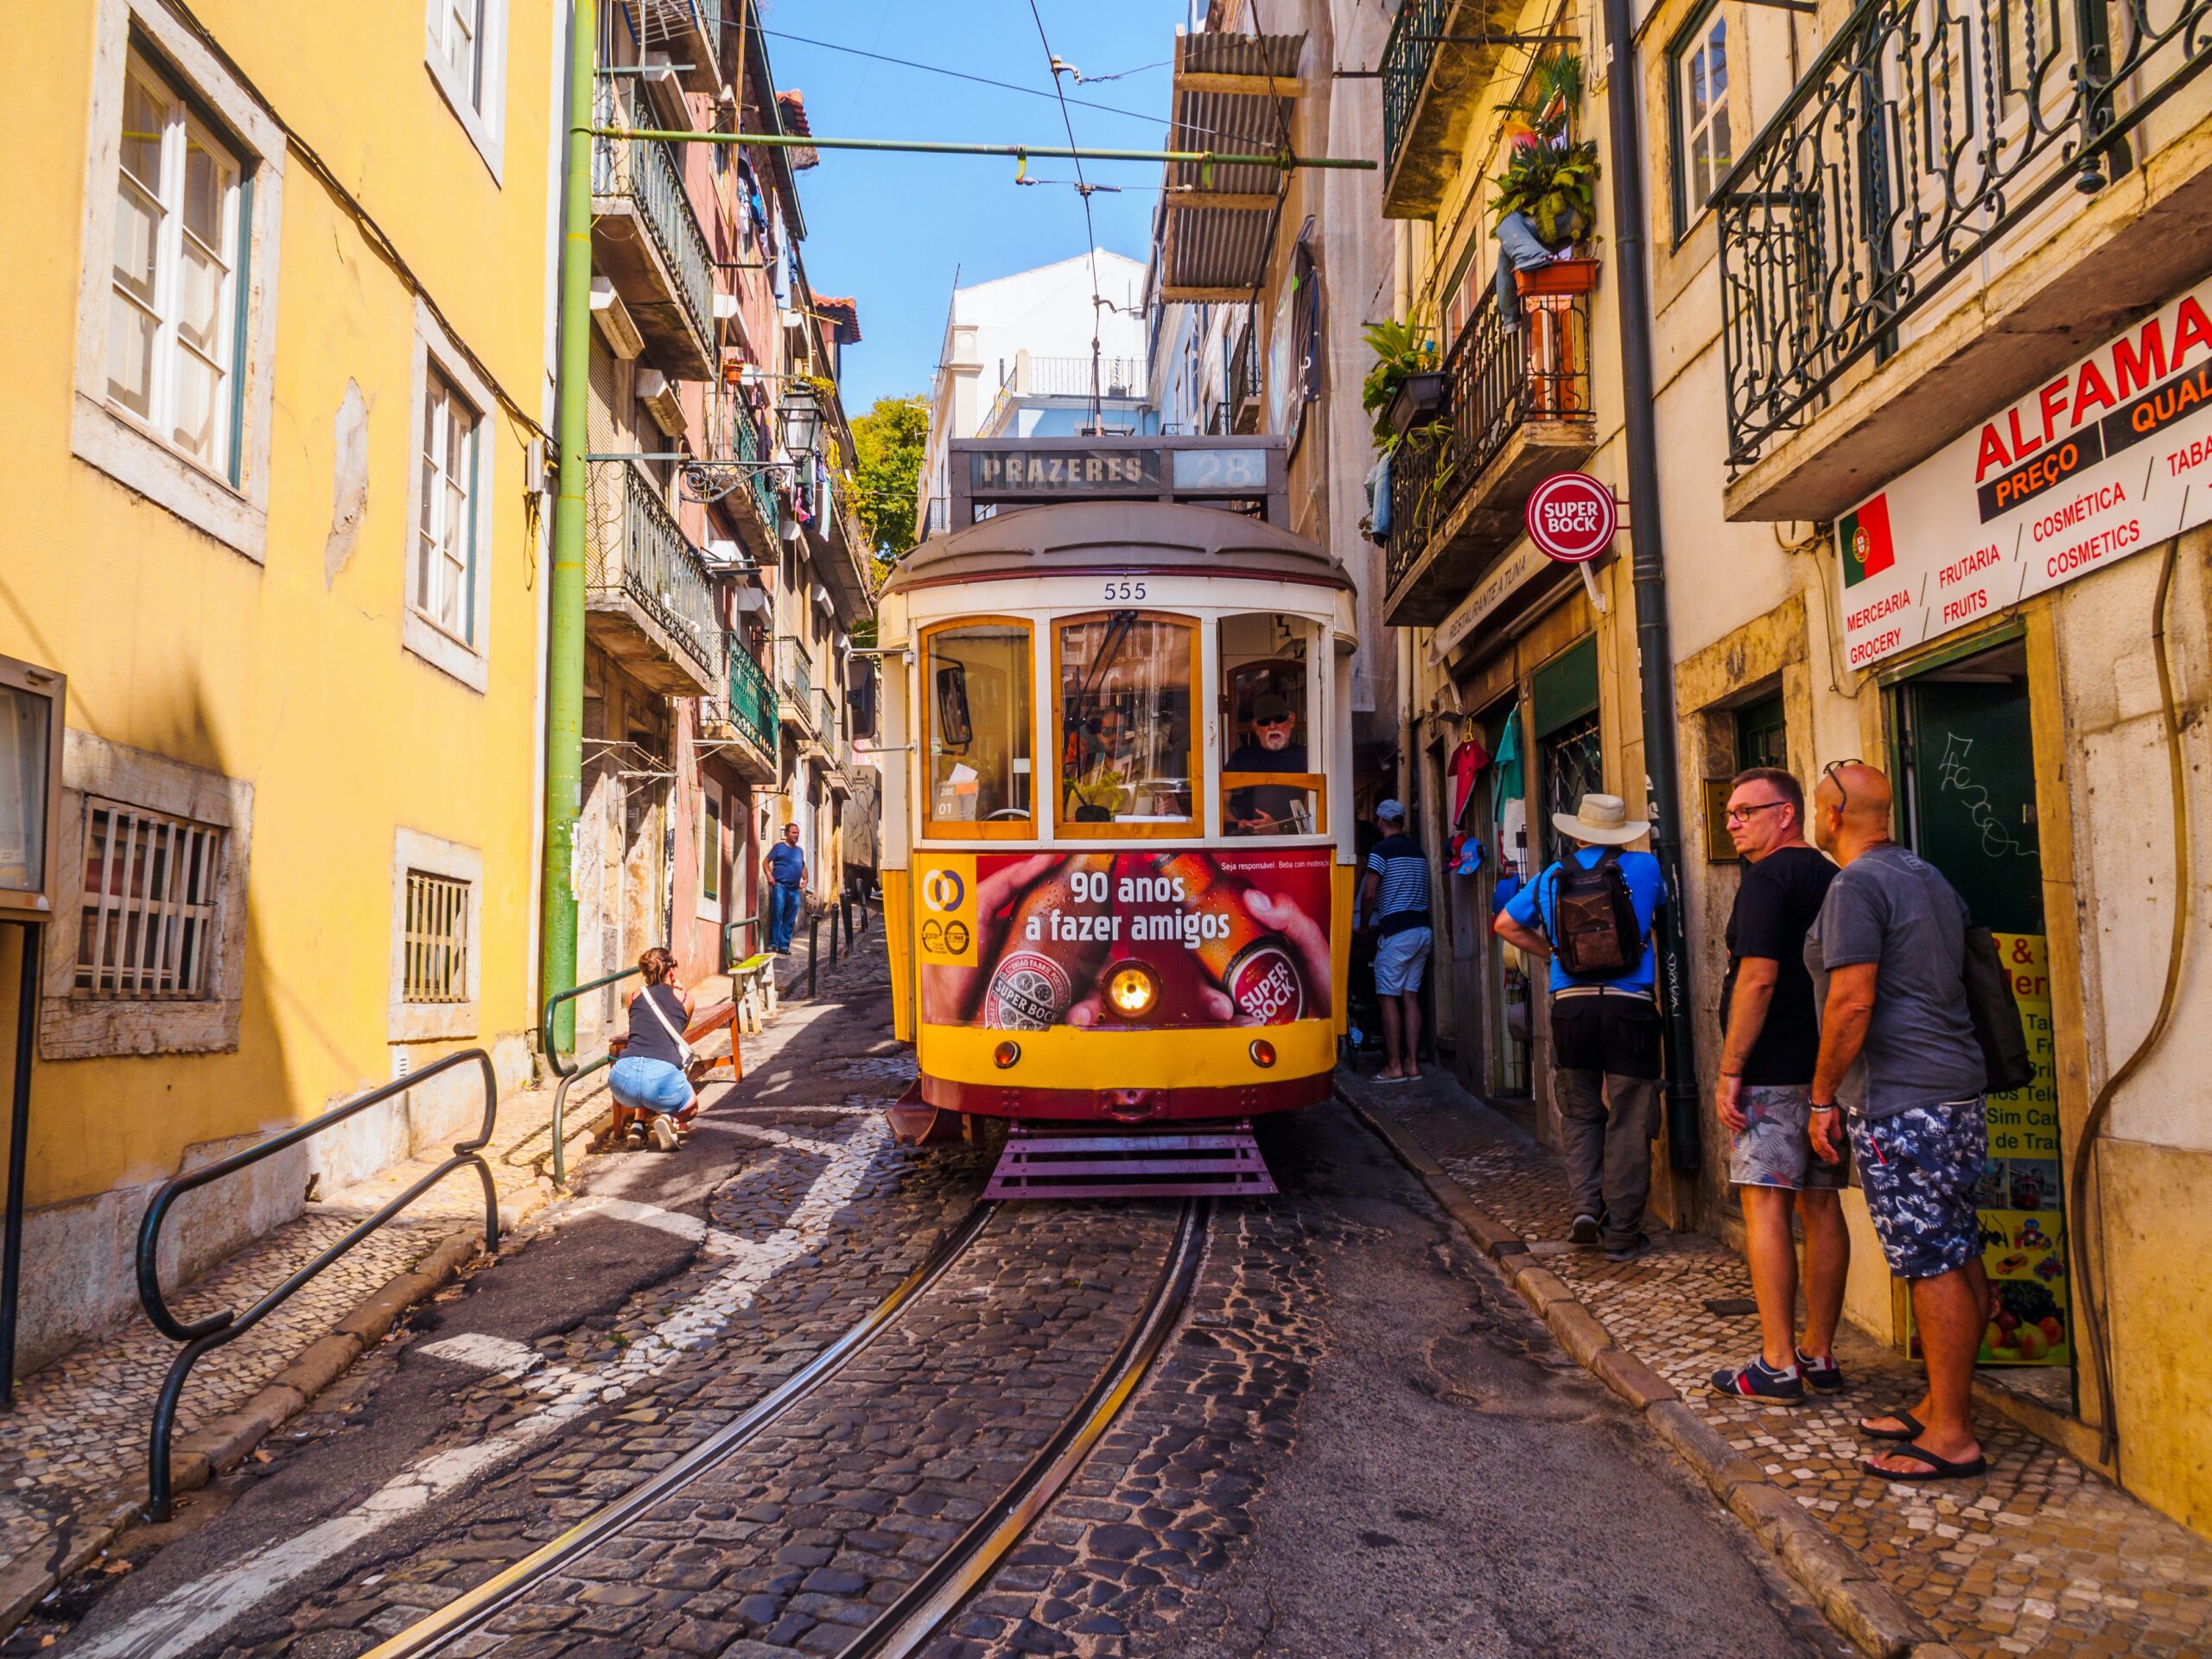 5 nopti in Lisabona, Portugalia – 291 euro (include zbor + cazare)